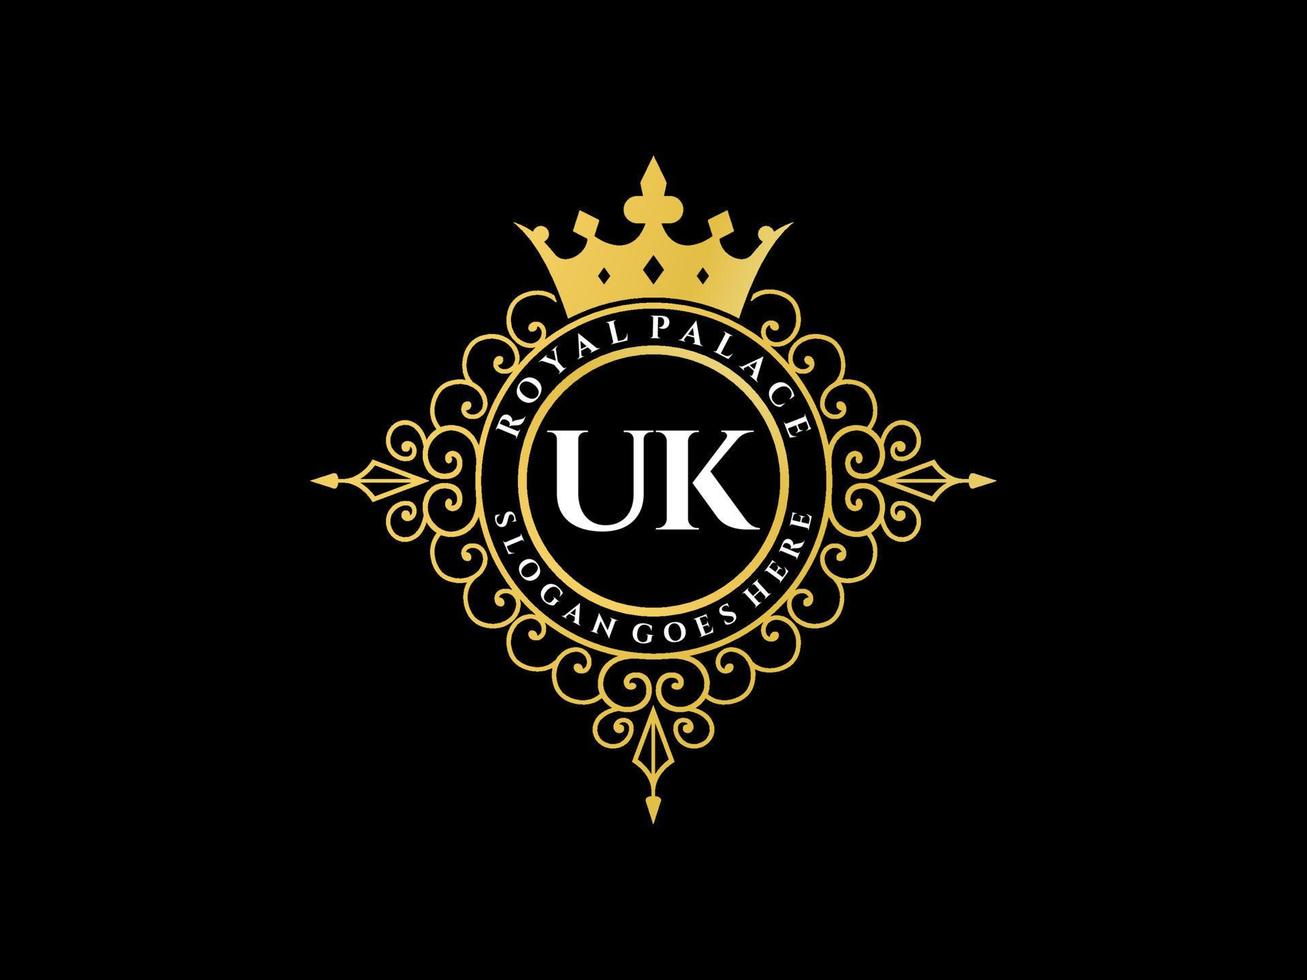 carta uk antigo logotipo vitoriano de luxo real com moldura ornamental. vetor